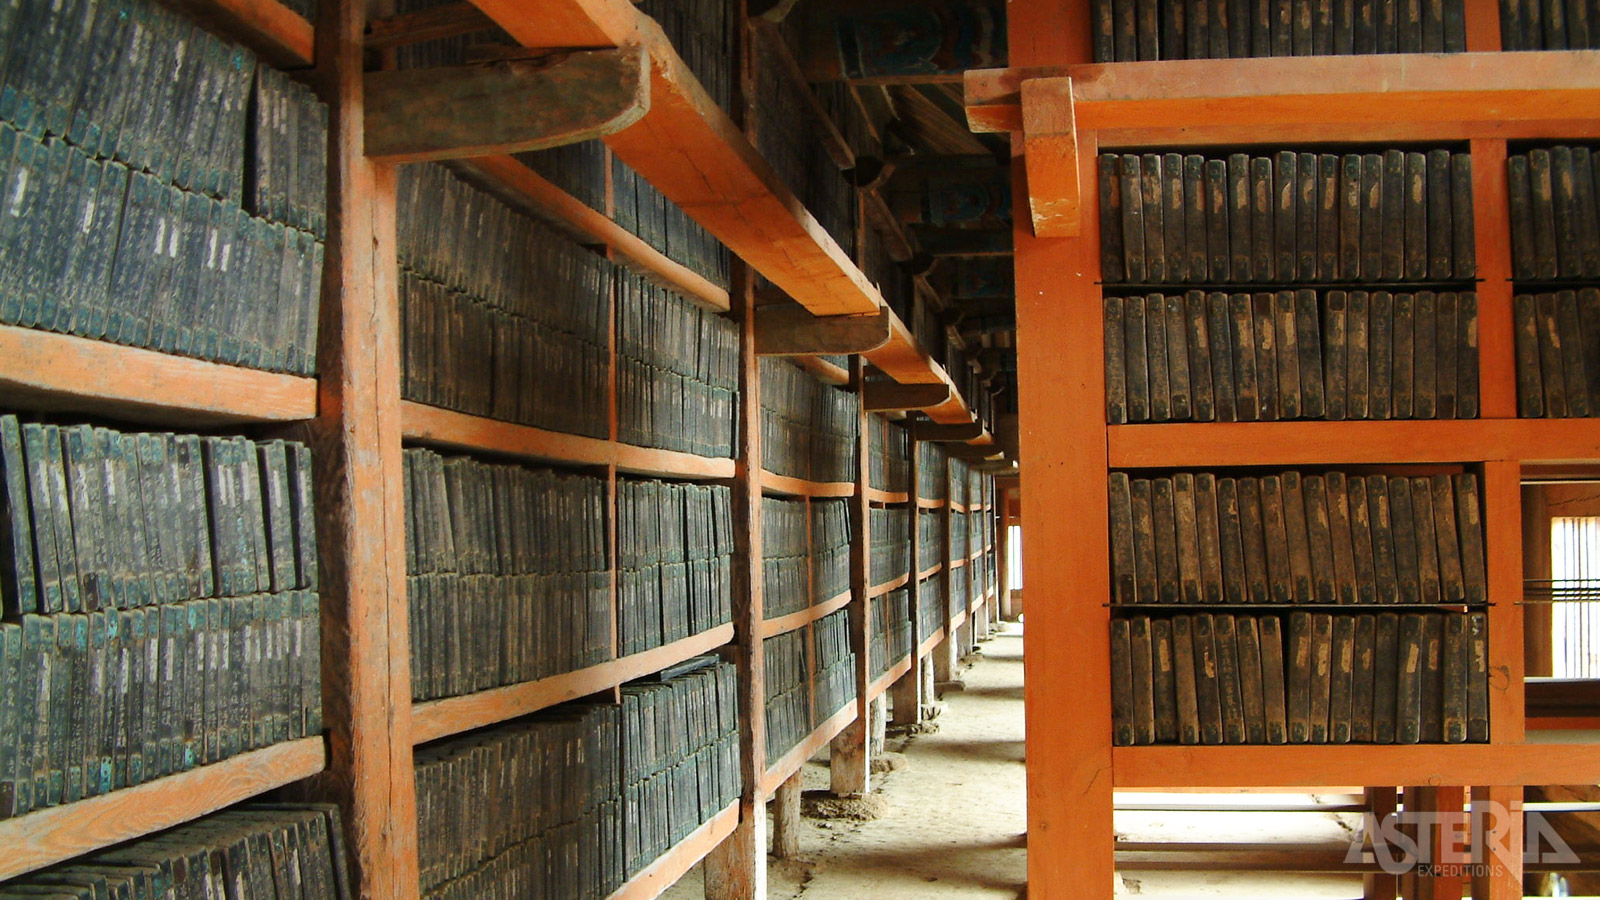 De Tripitaka Koreana omvat meer dan 80.000 houtblokken met gegraveerde boeddhistische verdragen, wetten en geschriften